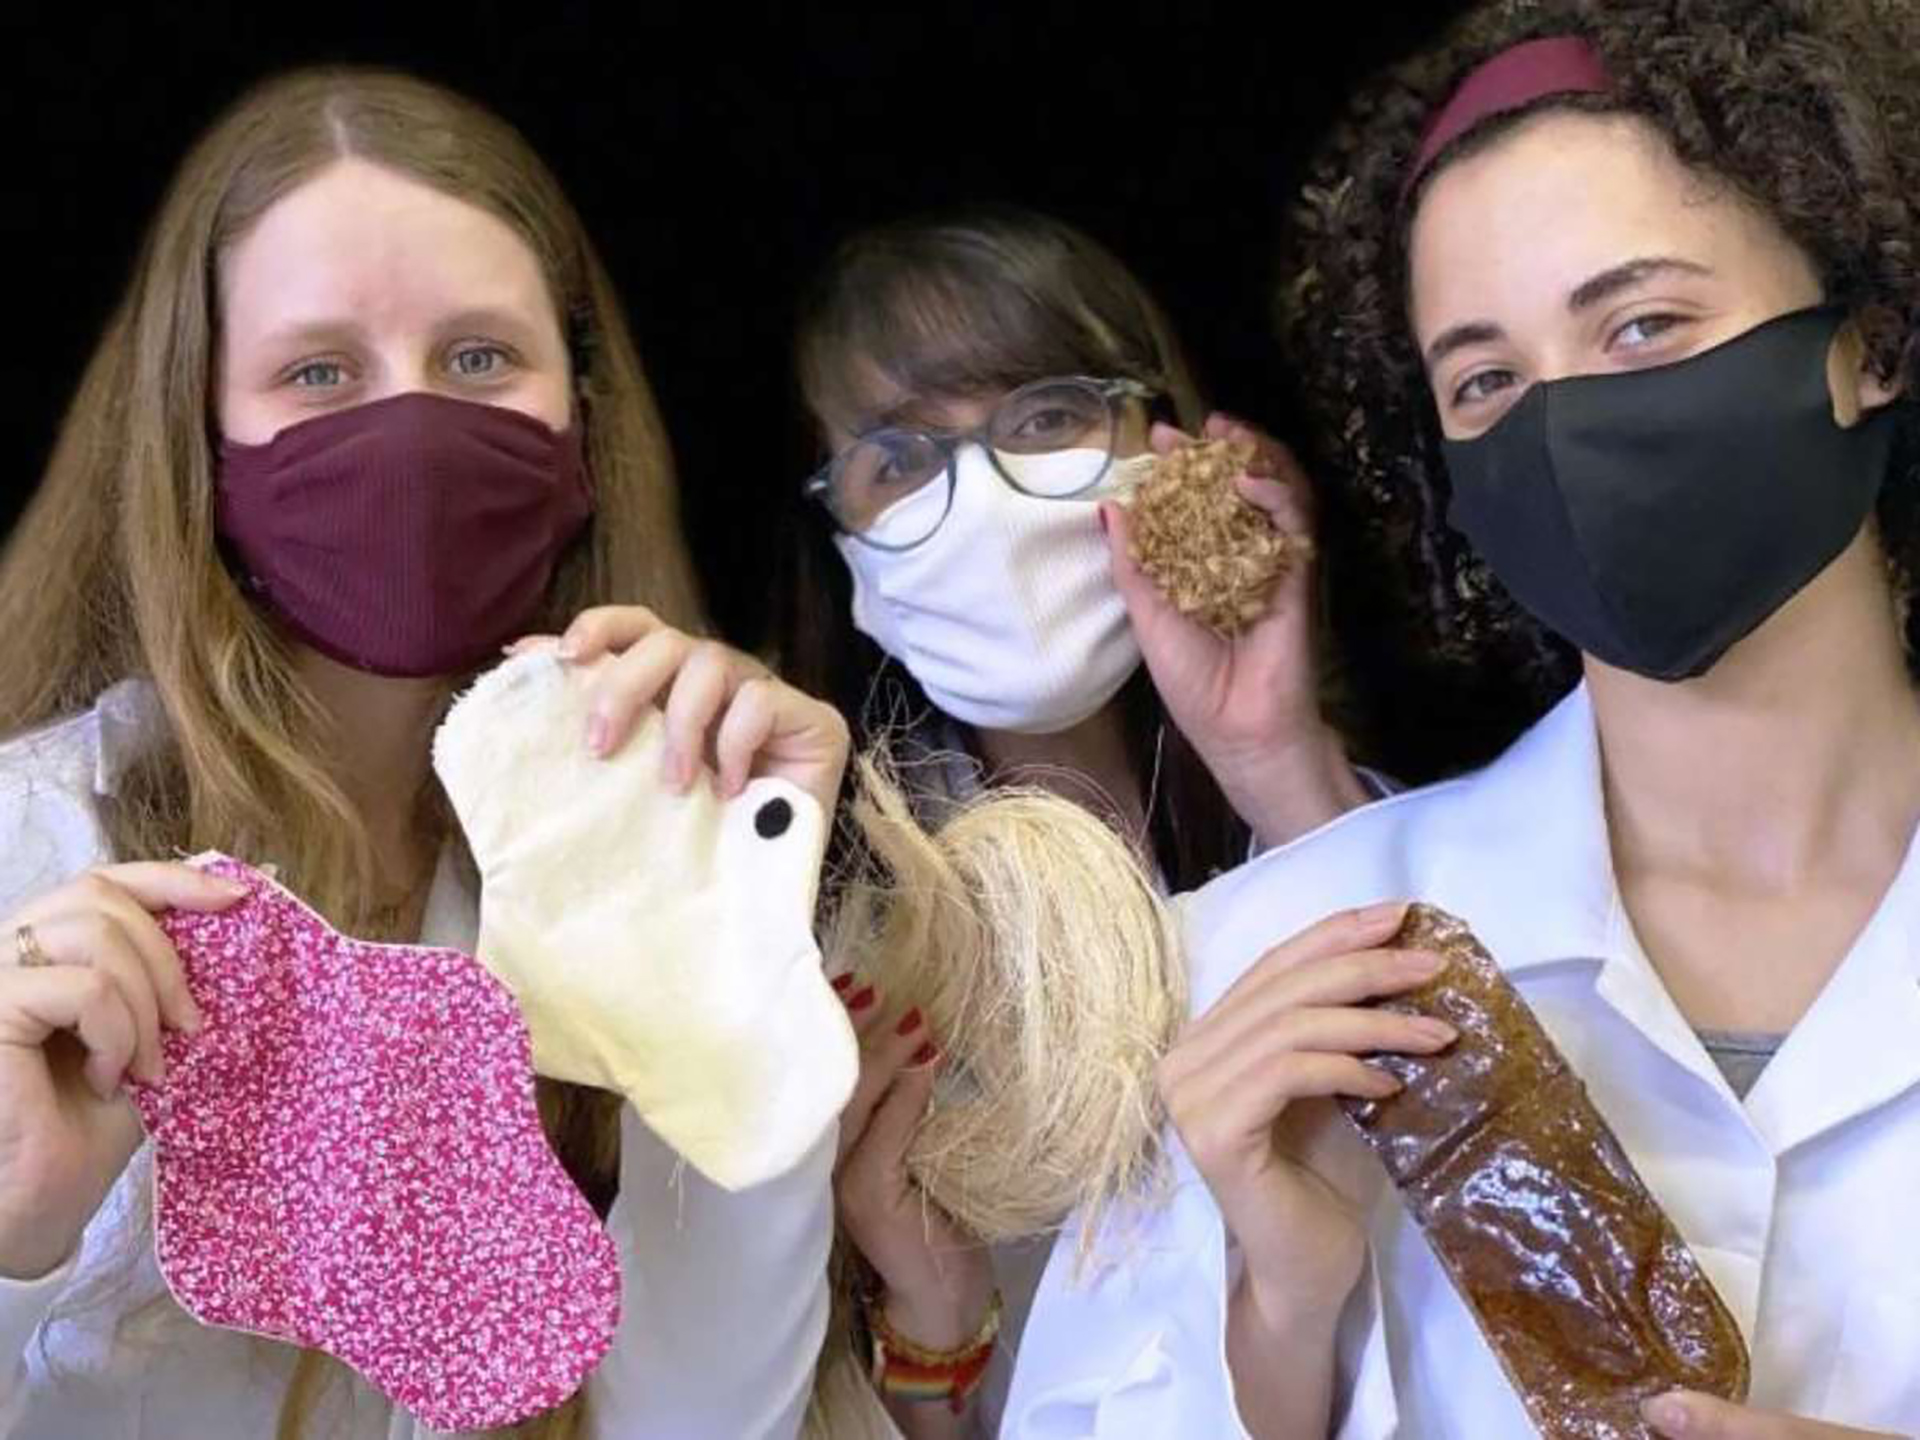 Mulheres brasileiras desenvolvem absorvente biodegradável a base de fibra de bananeira e acaí